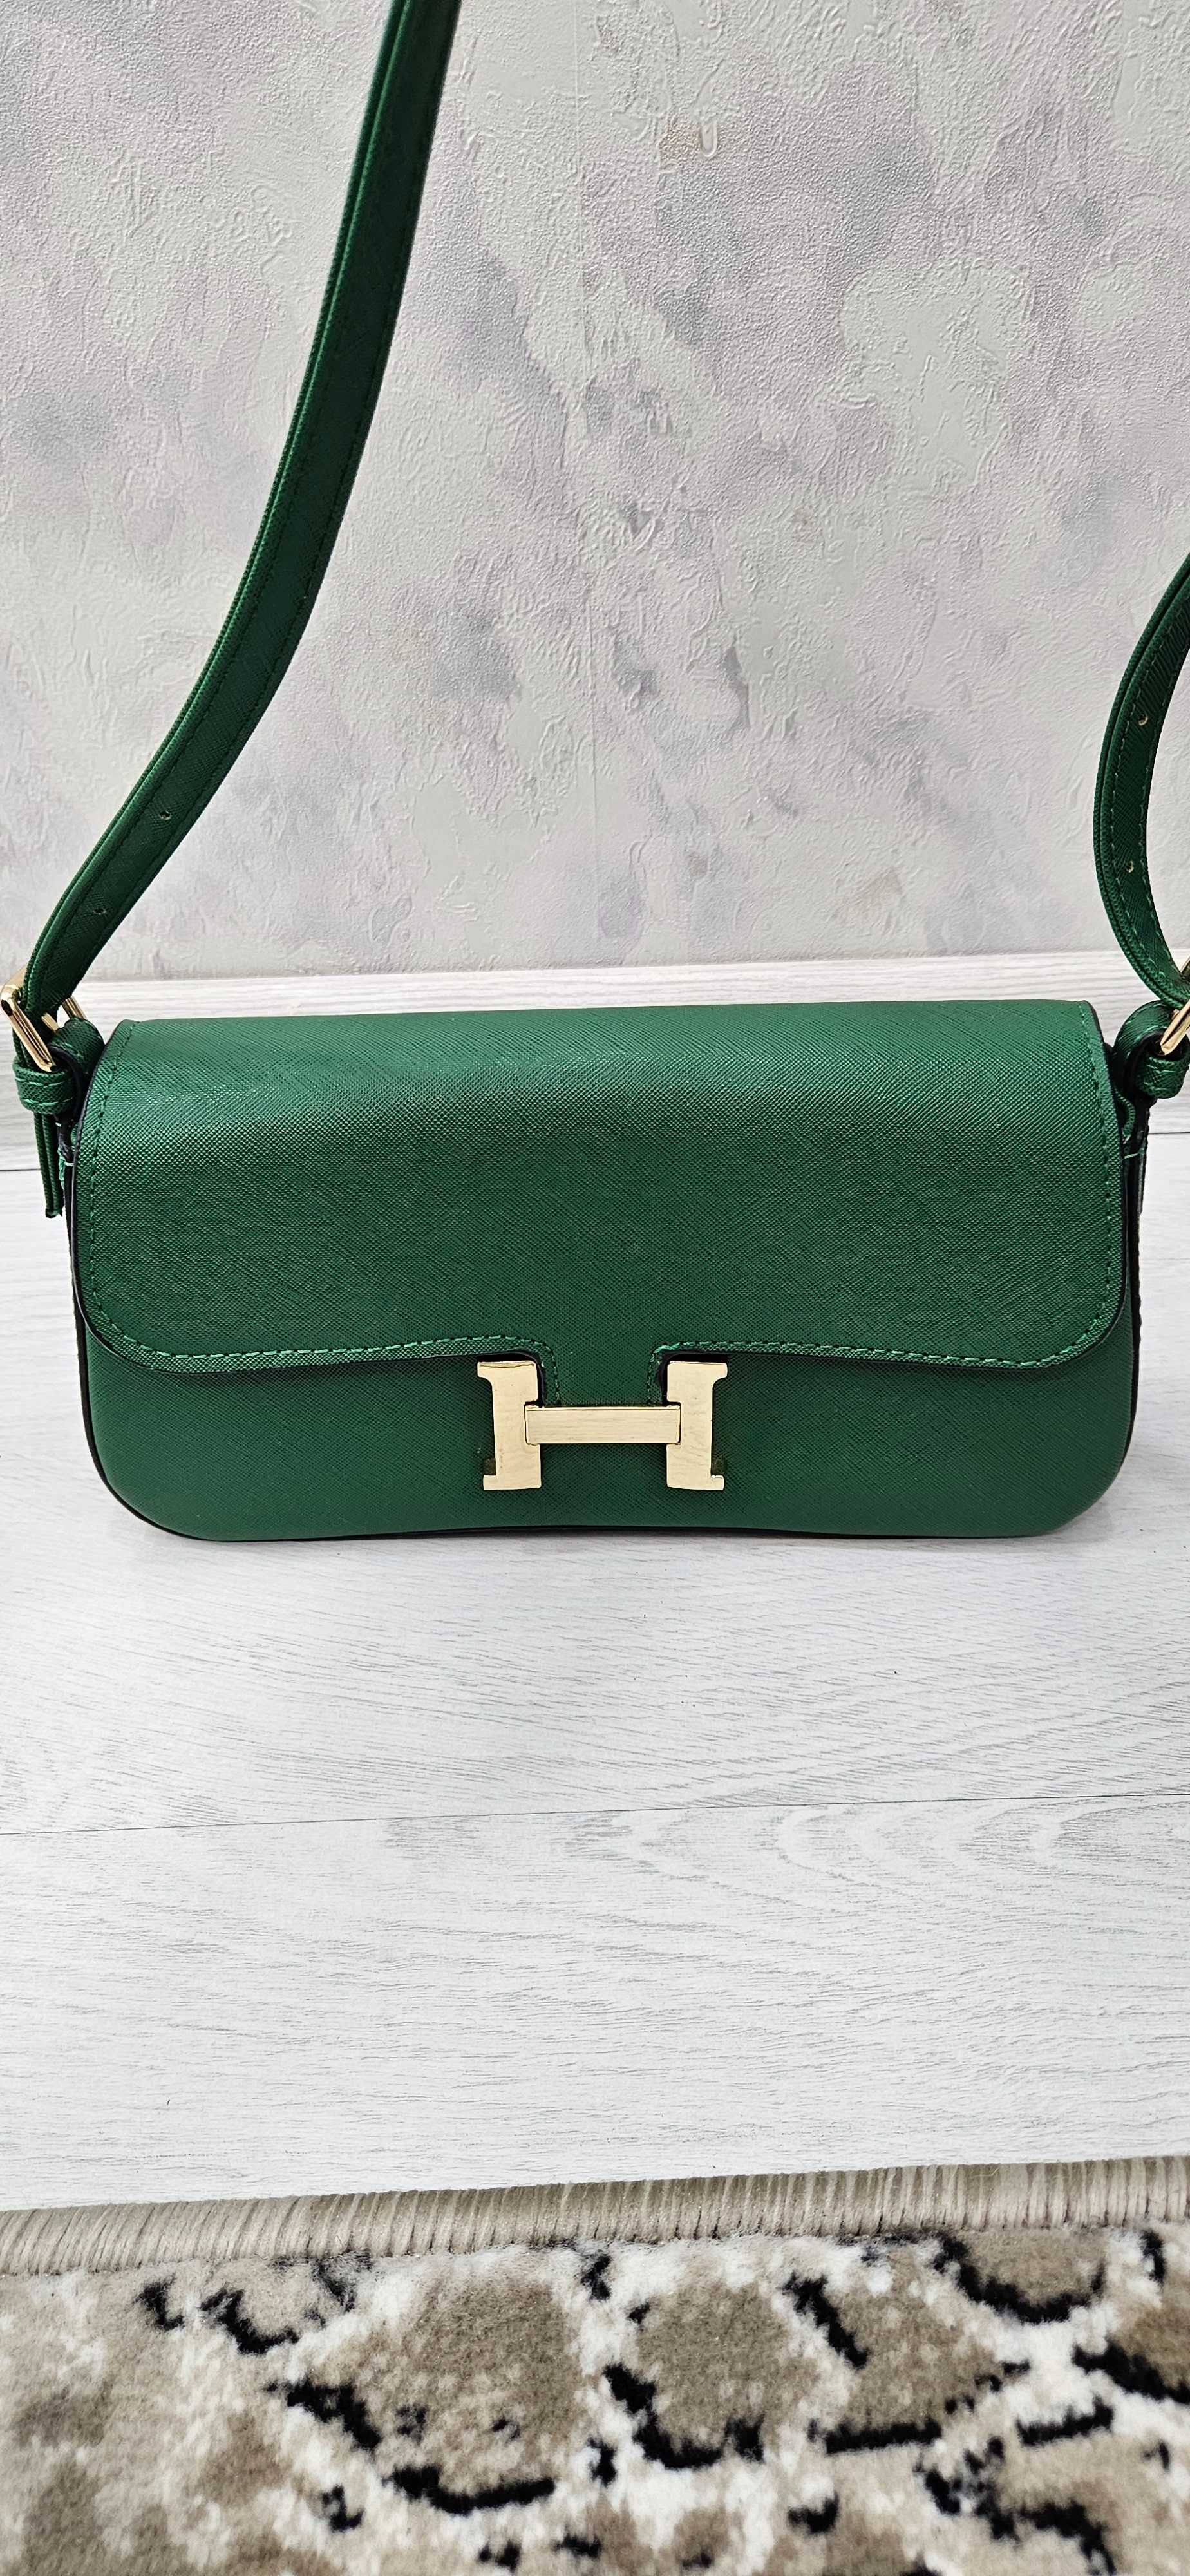 Hermes зеленая сумка